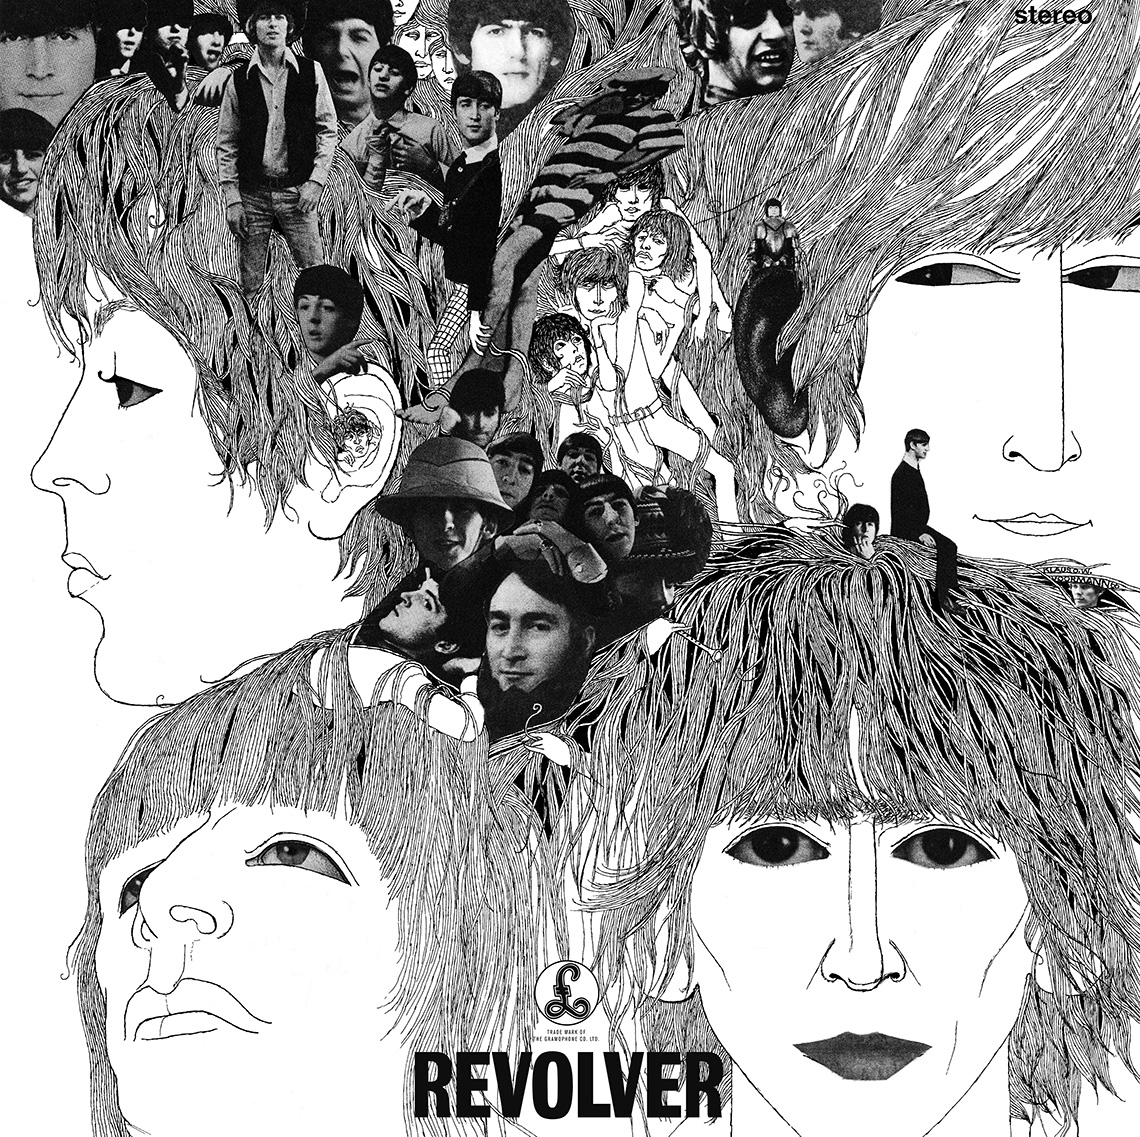 Portada del álbum “Revolver” de los Beatles.